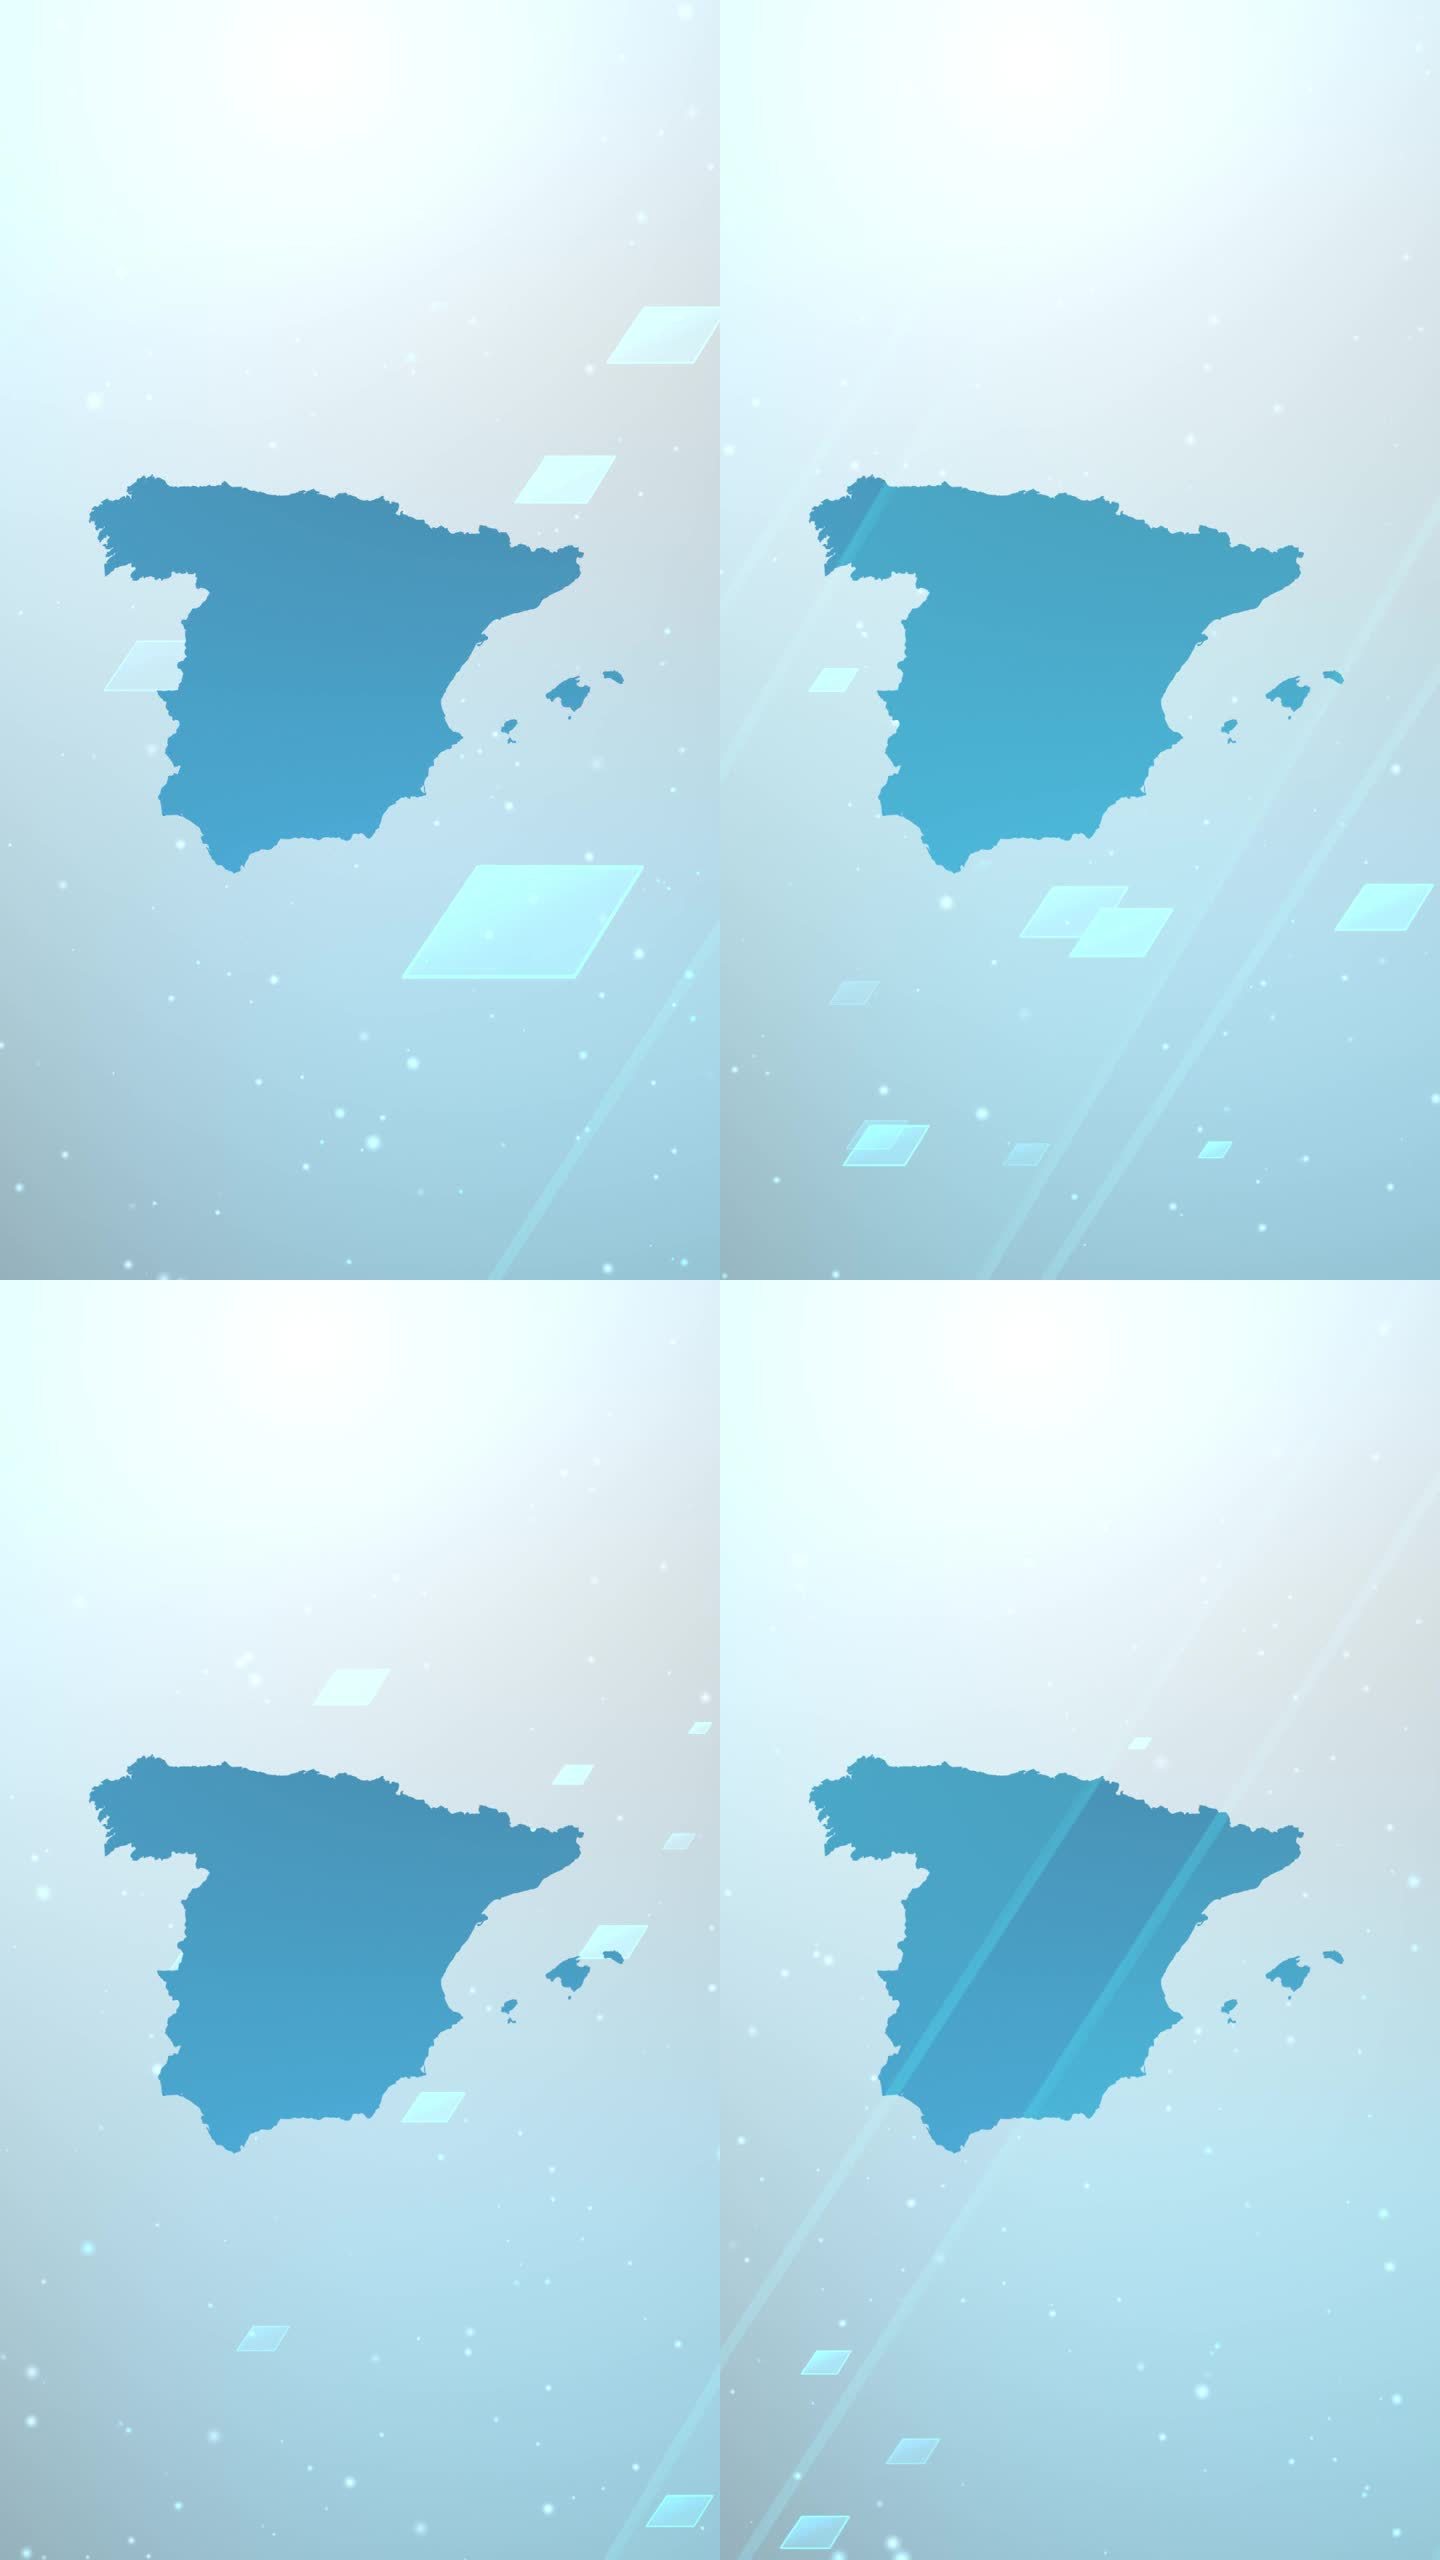 西班牙地图滑块背景